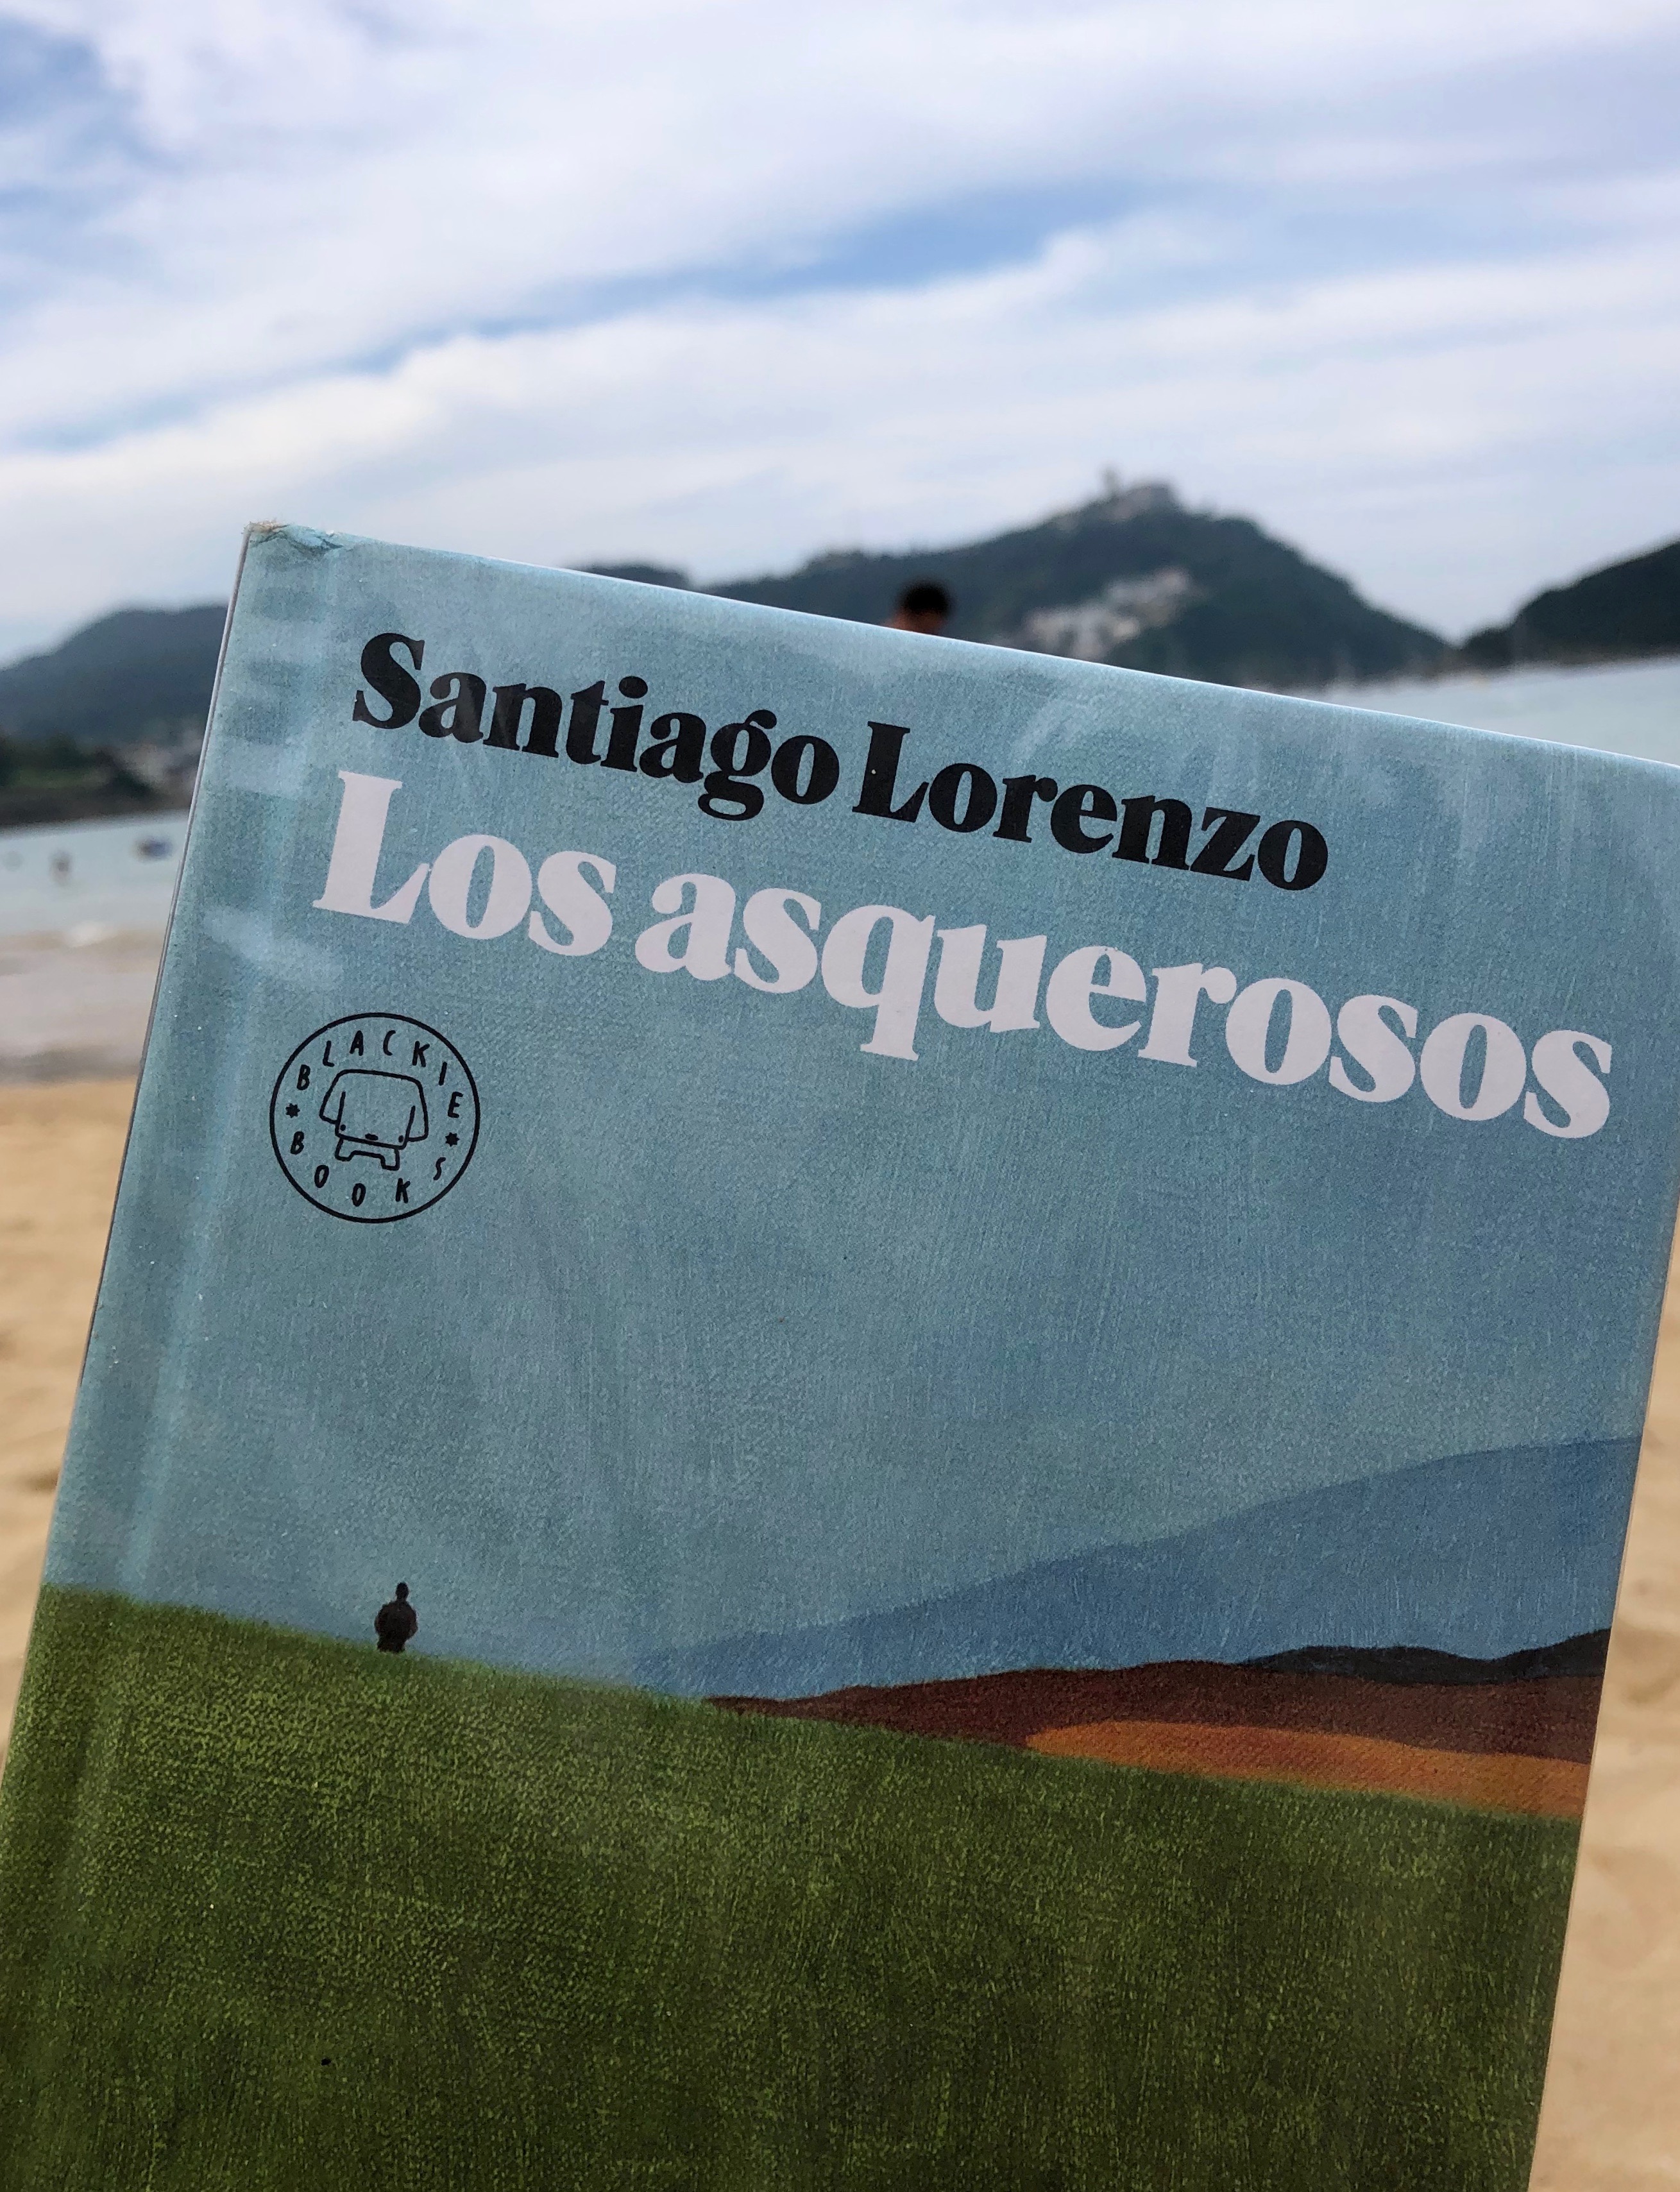 Resultado de imagen de los asquerosos santiago lorenzo